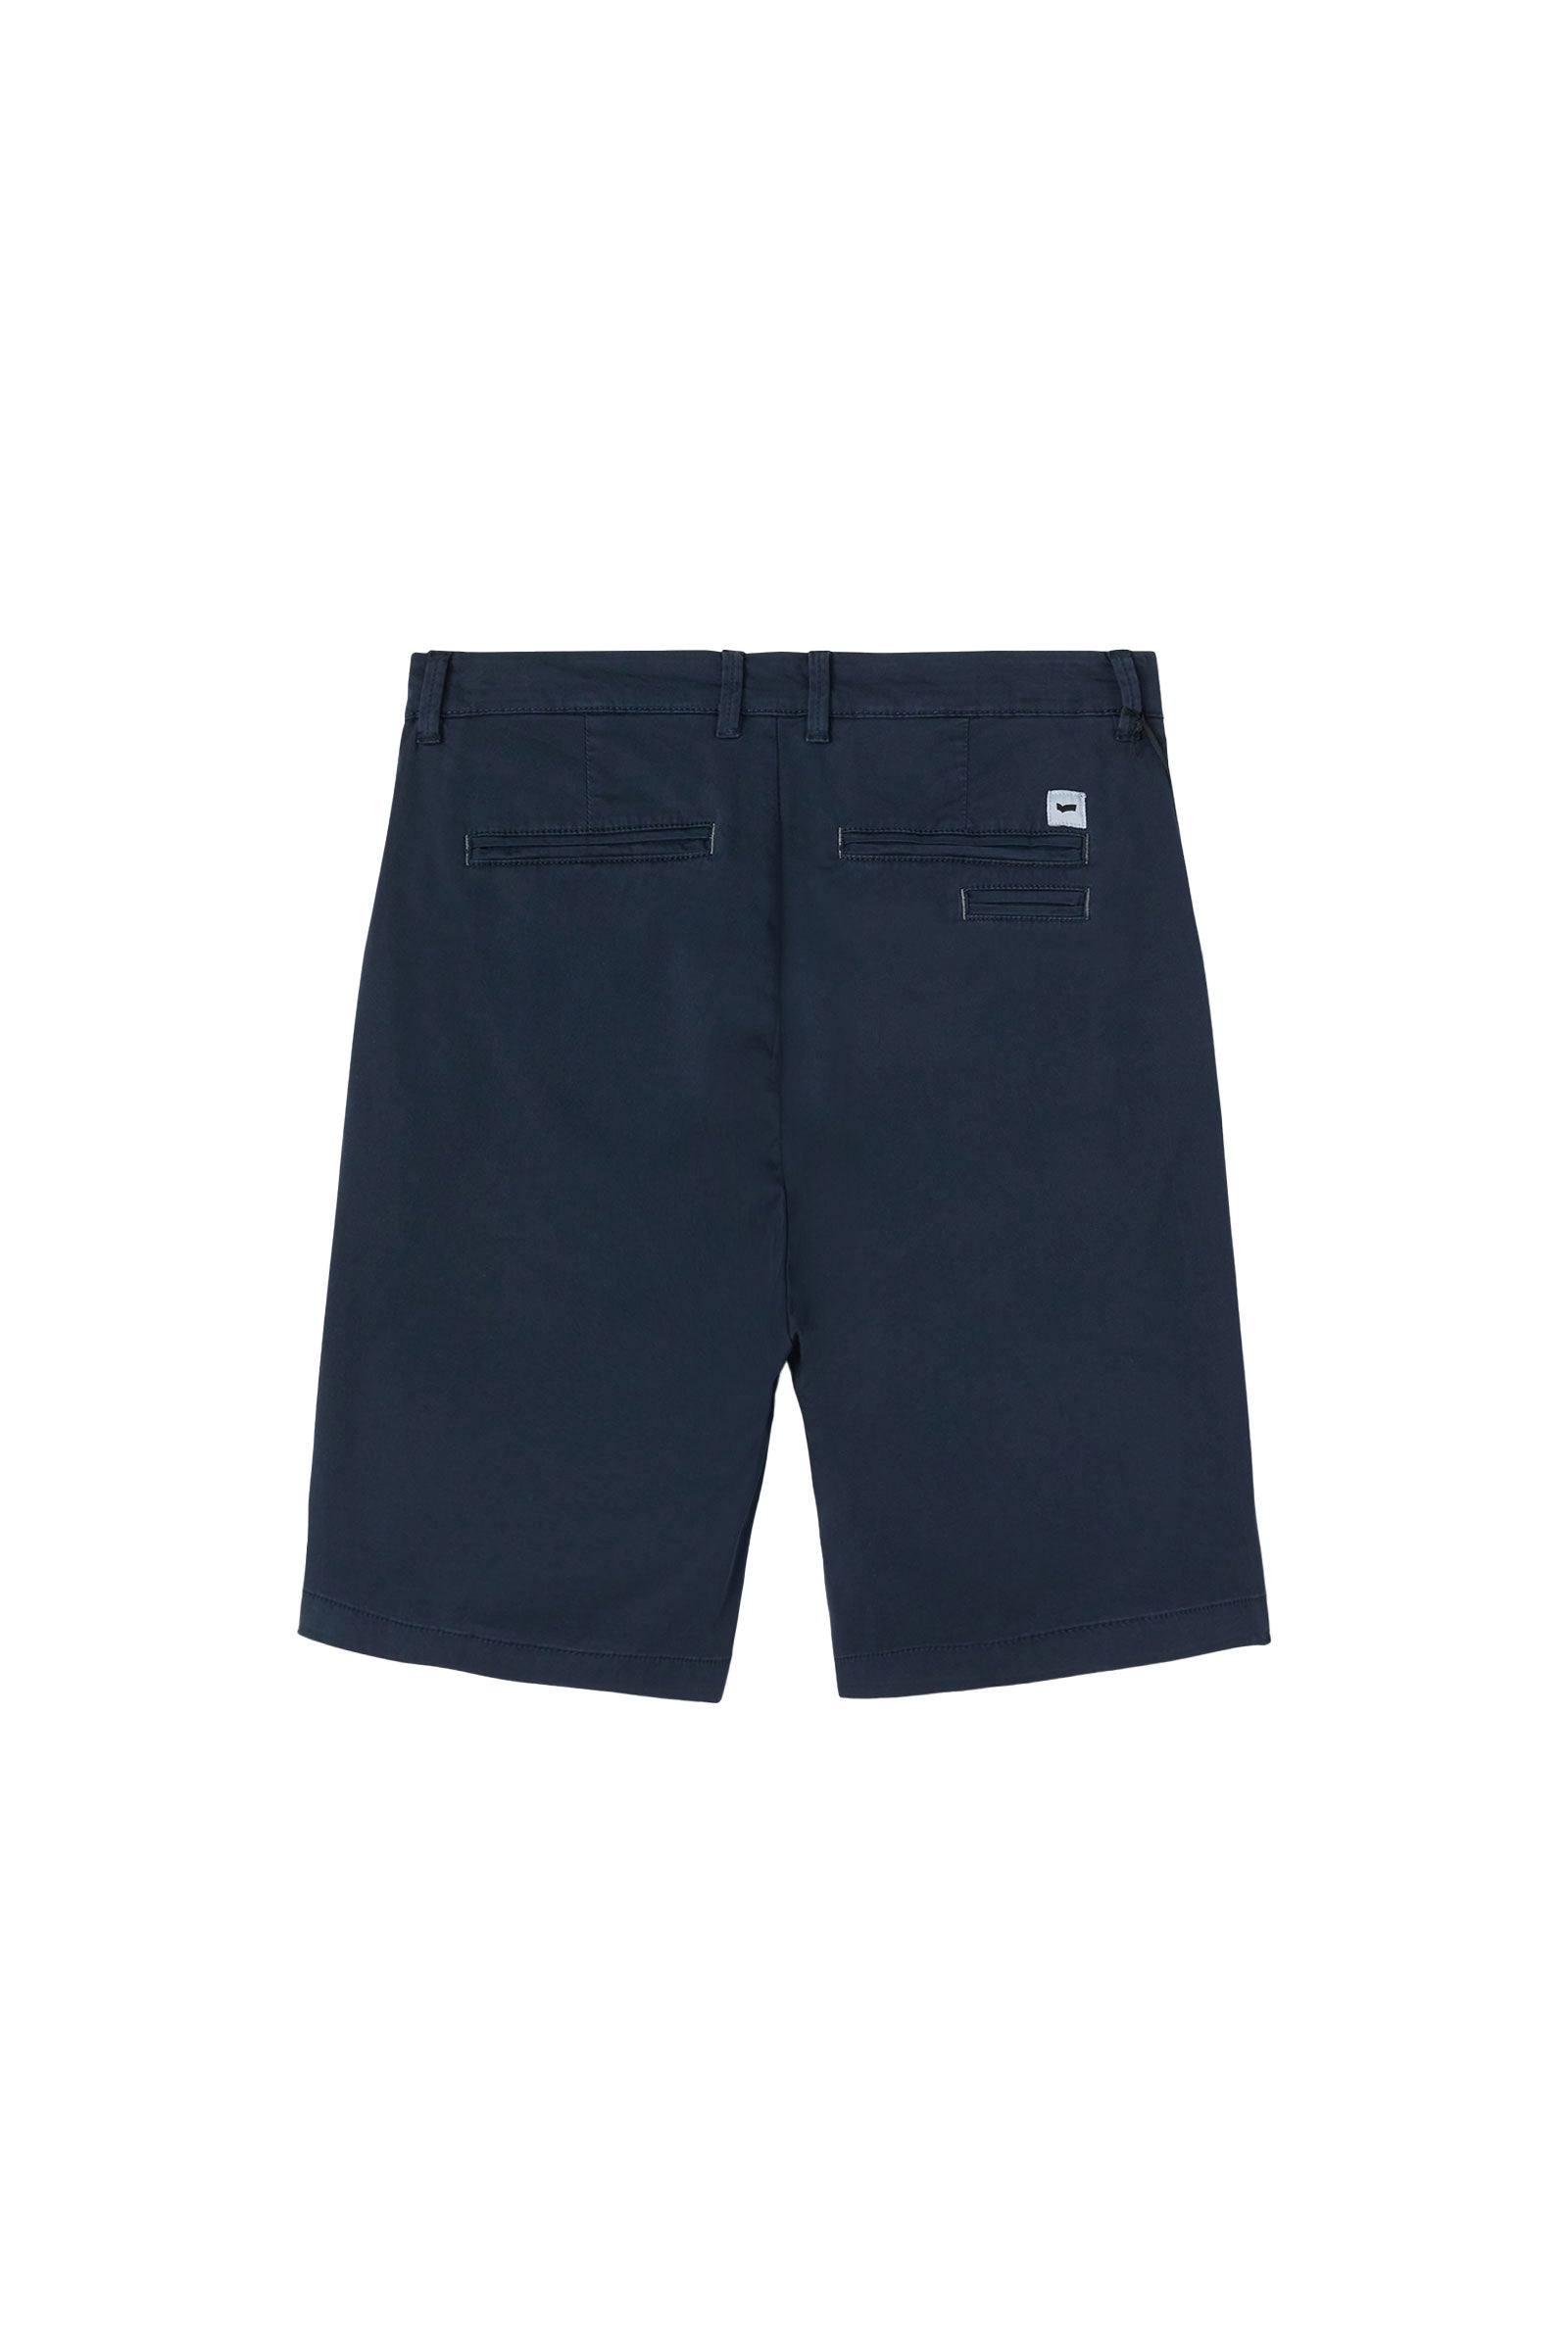 N.Sadeck Short Shorts in Navy Blue Shorts GAS   